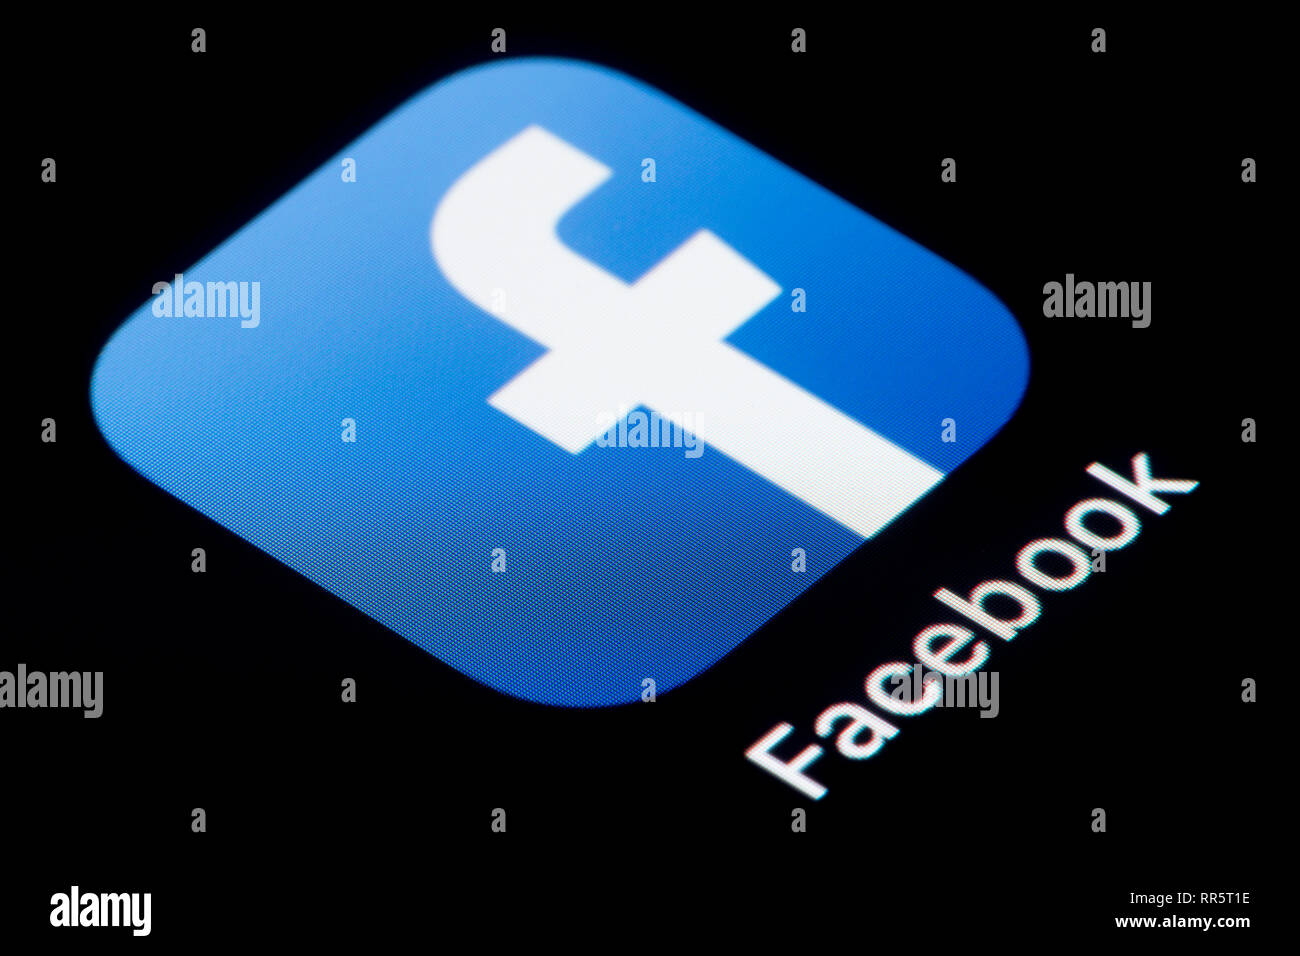 Un gros plan de l'icône de l'application Facebook, comme on le voit sur l'écran d'un téléphone intelligent (usage éditorial uniquement) Banque D'Images